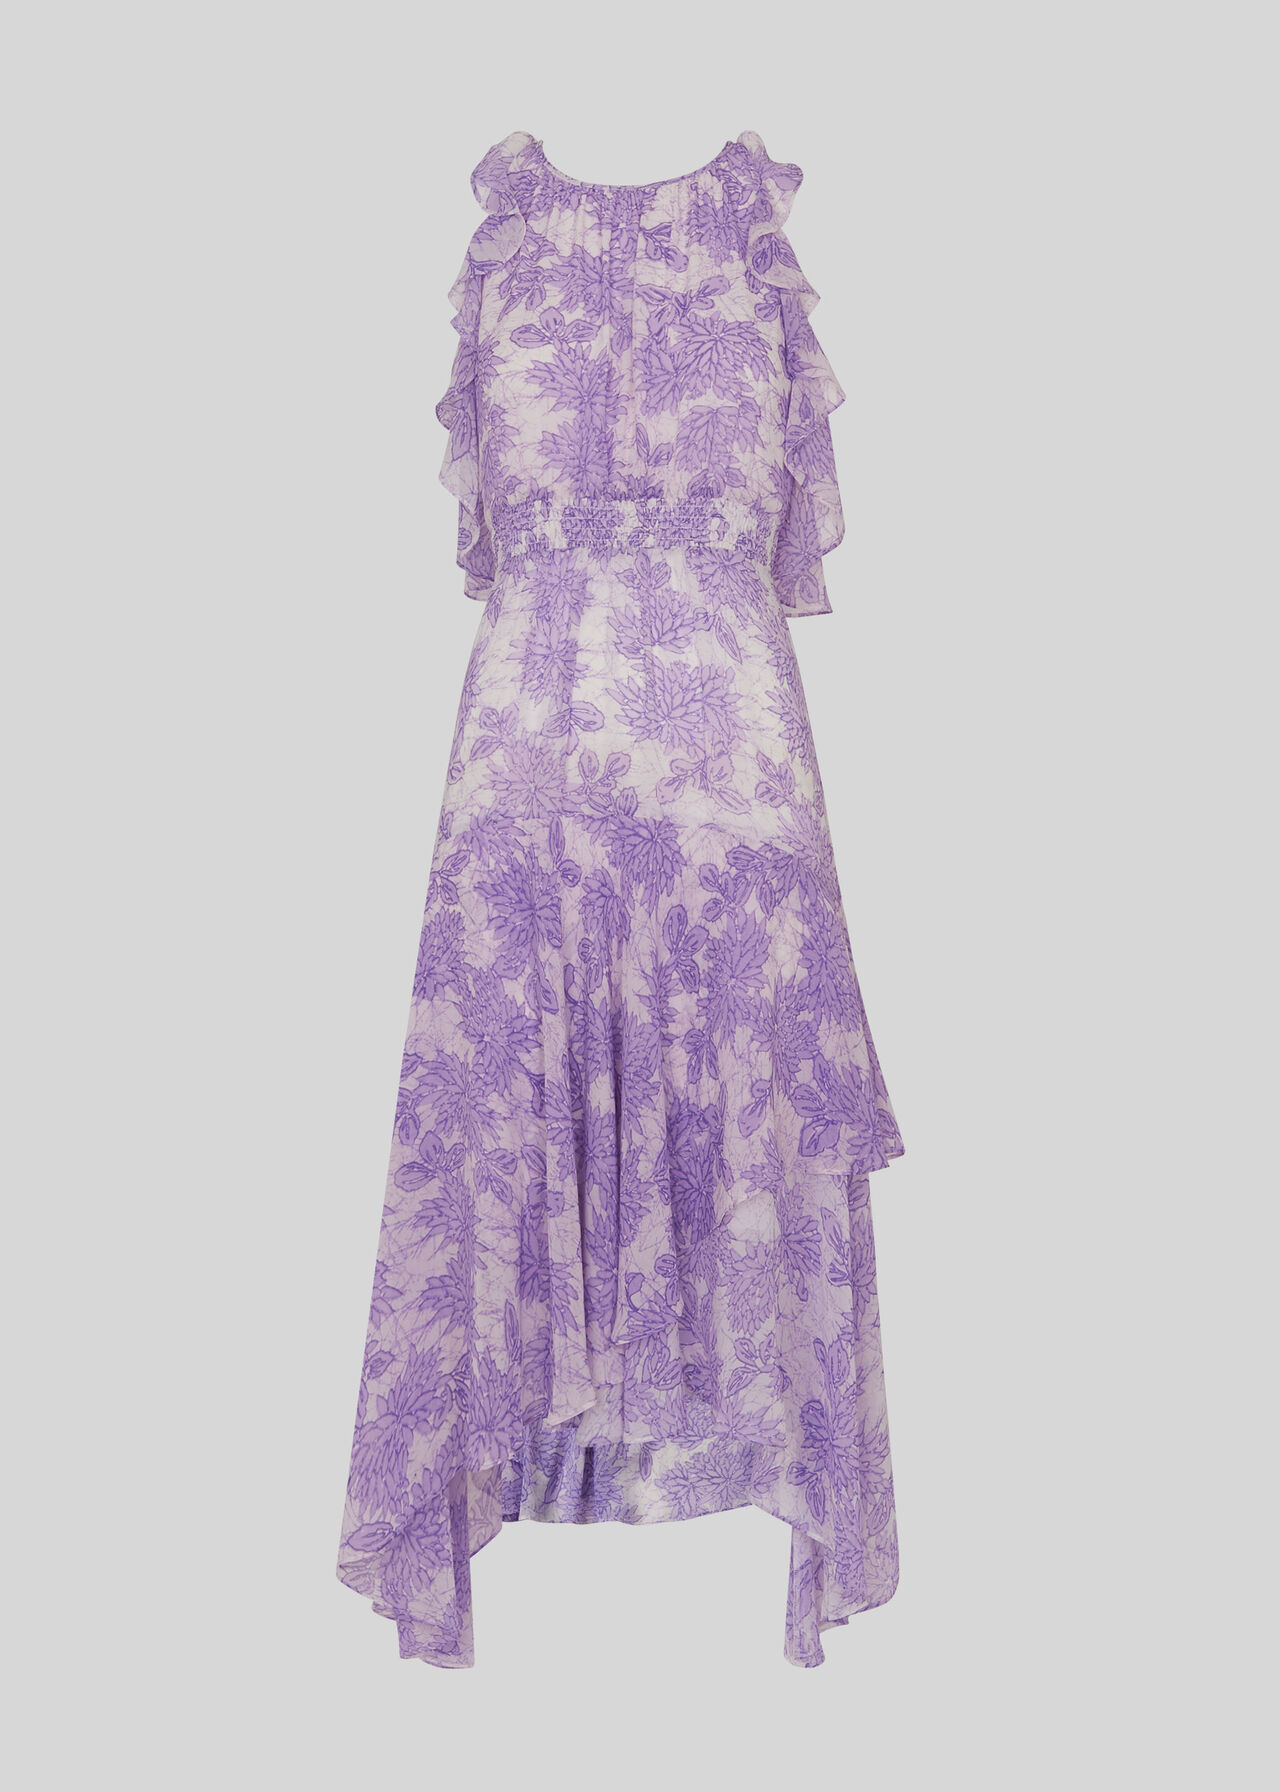 Anne Batik Lily Print Dress Lilac